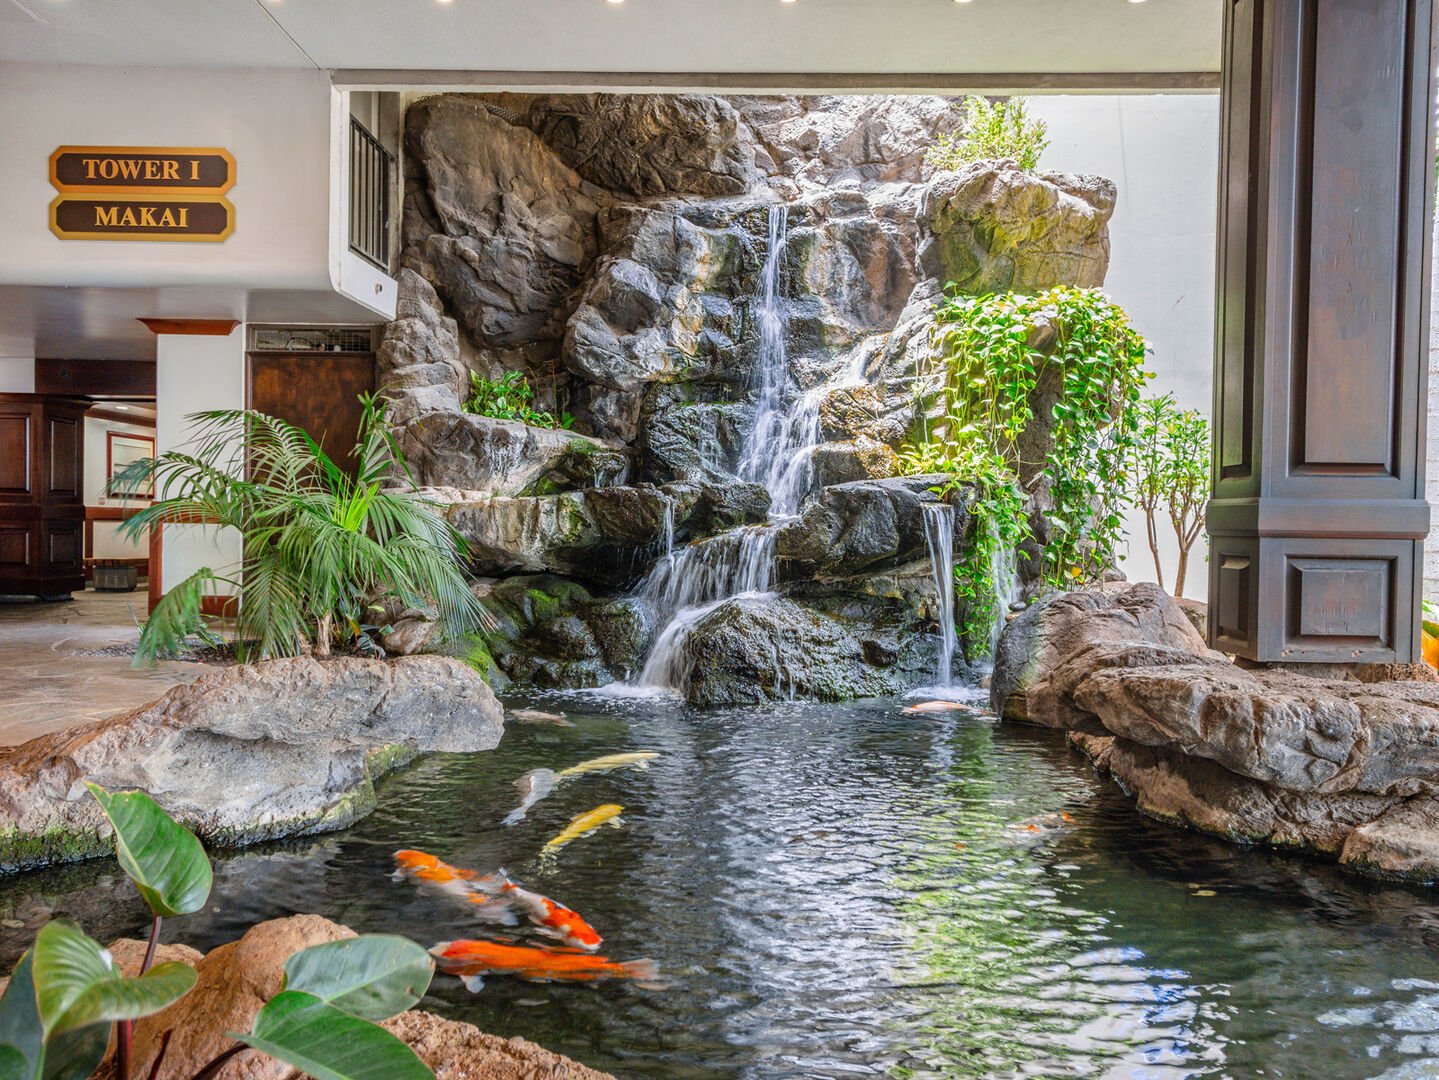 Koi pond at the lobby.